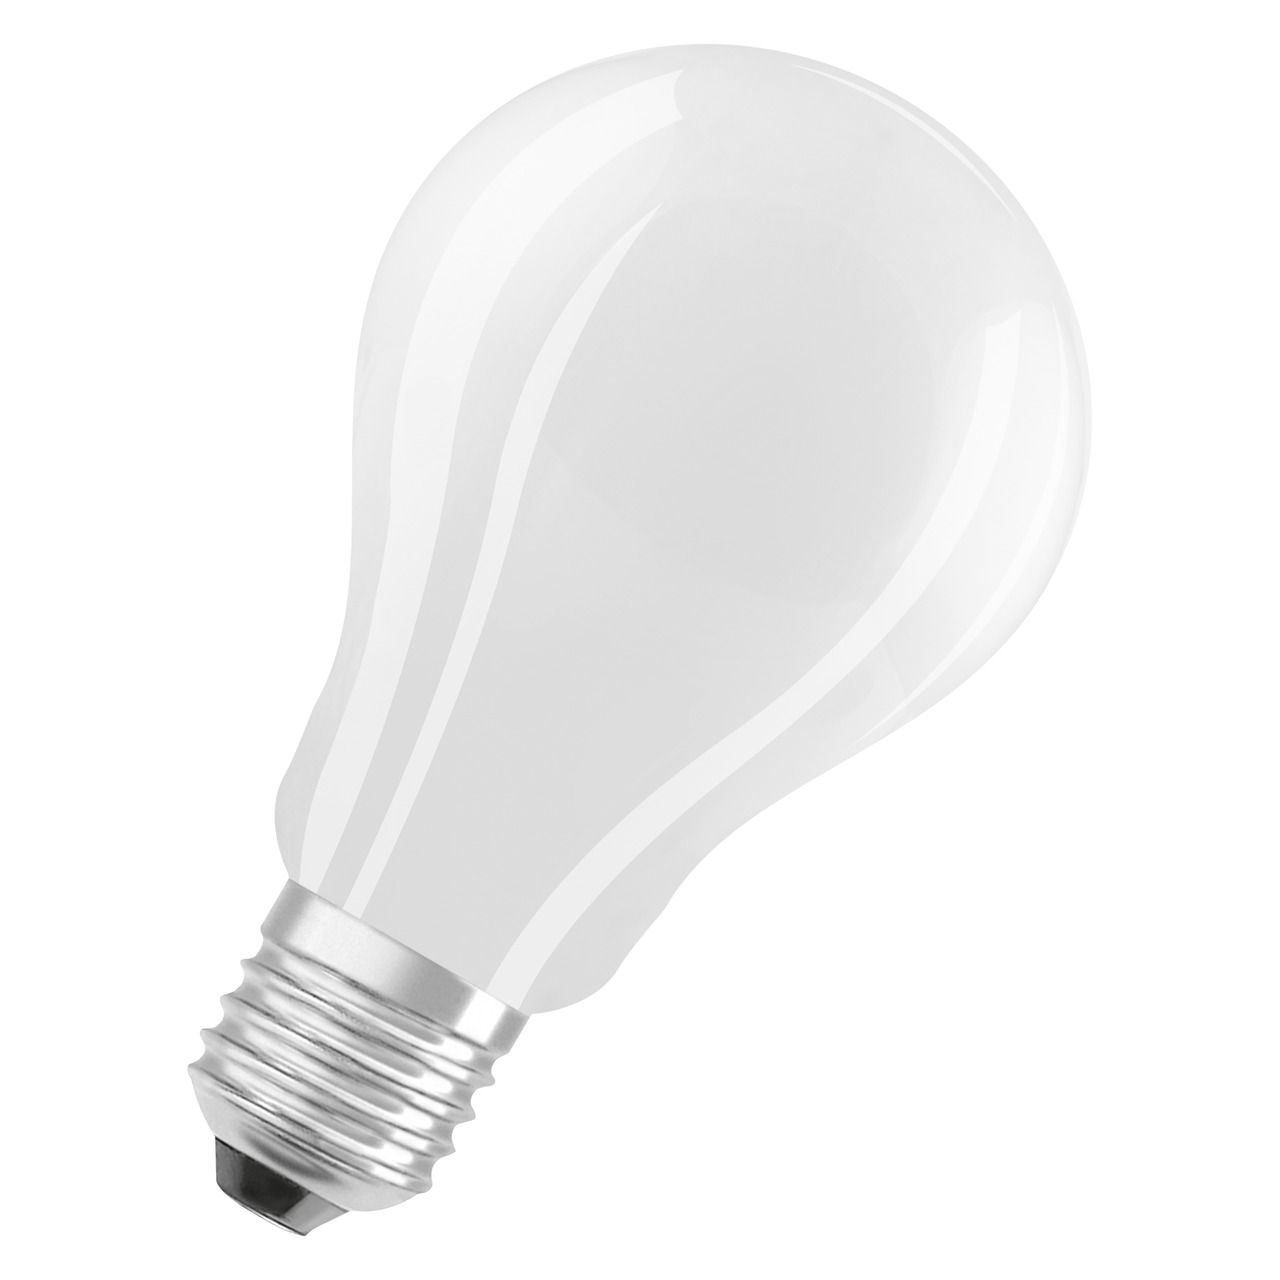 OSRAM 17-W-LED-Lampe A70- E27- 2452 lm- warmweiss- matt unter Beleuchtung